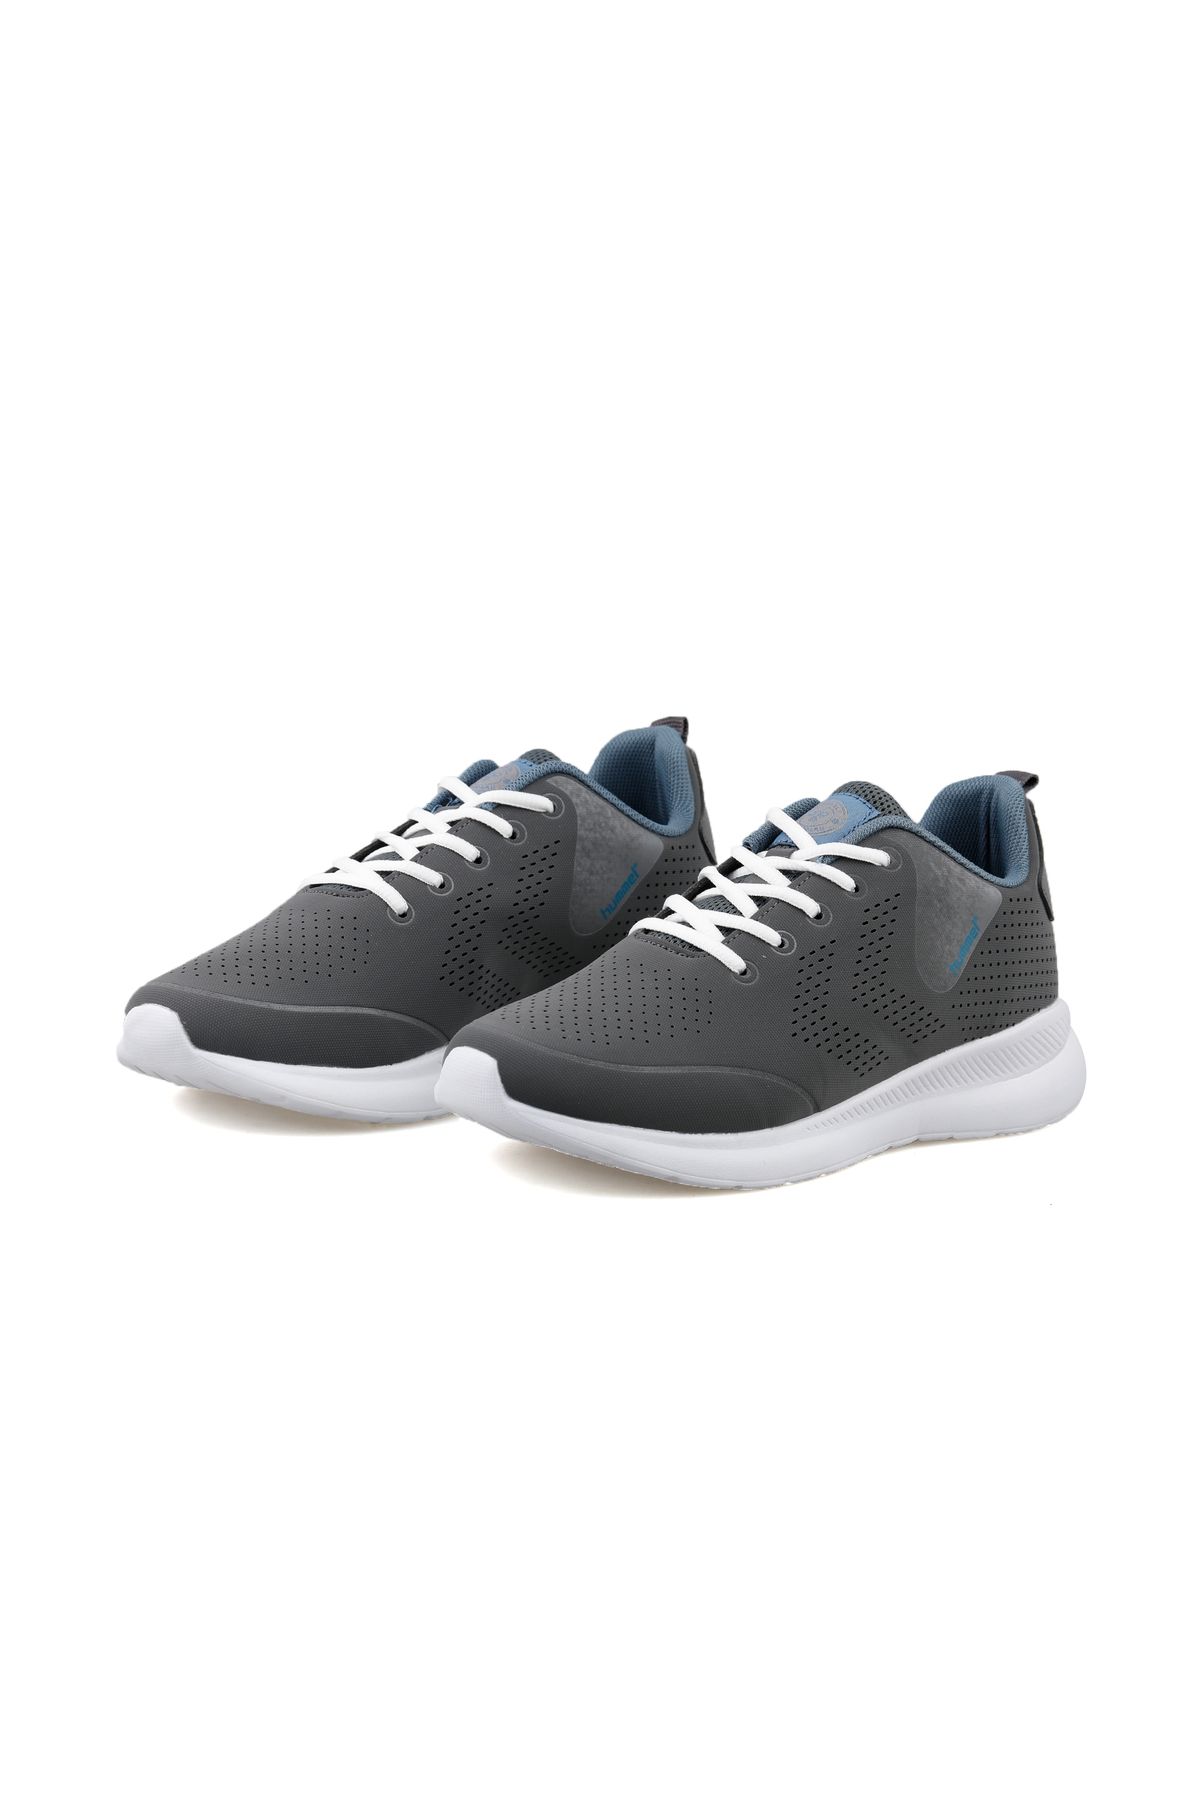 hummel Unisex Günlük Kullanıma Uygun Koşu Yürüyüş Spor Ayakkabı Sneaker